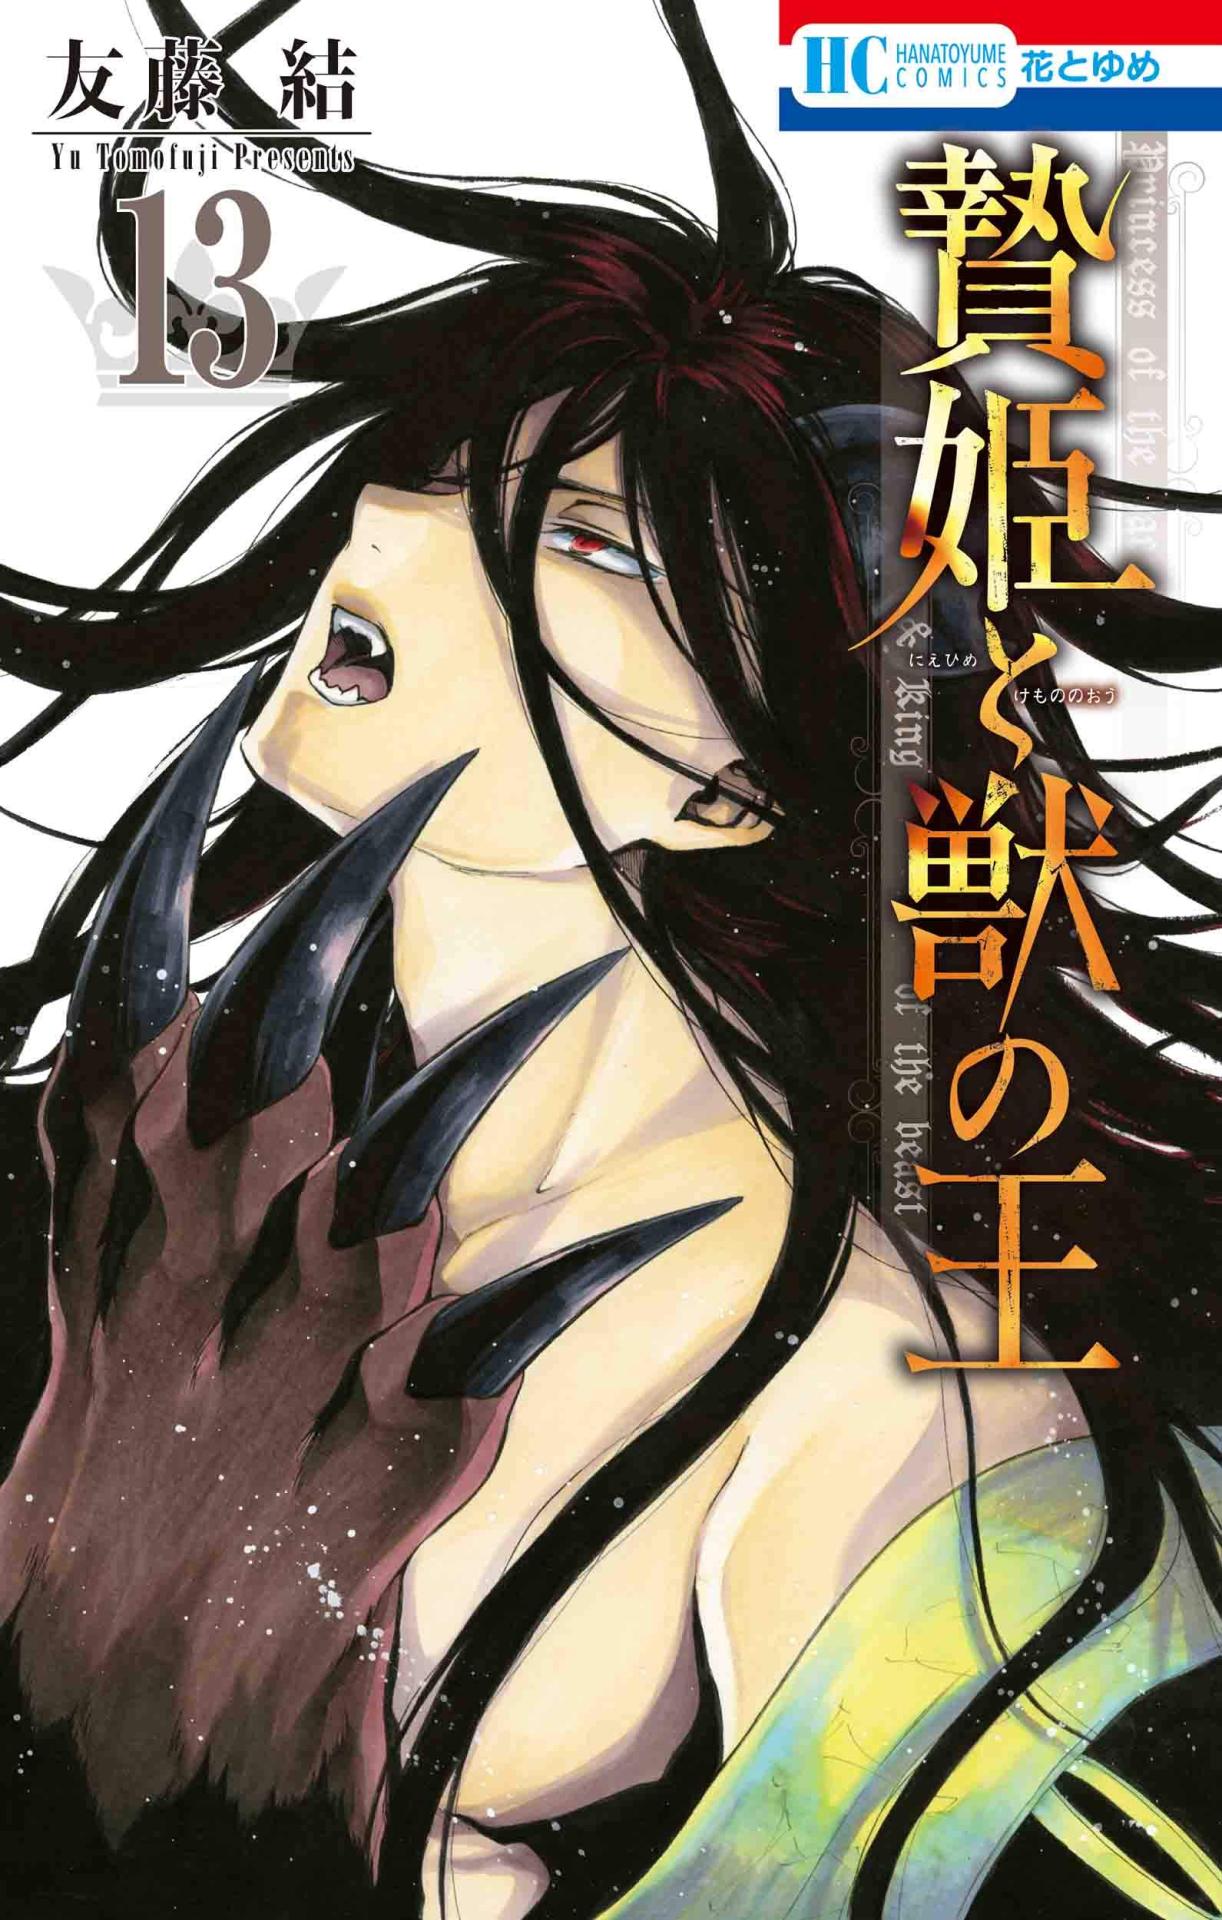 Manga: Niehime to Kemono no Ou  Manga anime, Anime, Anime art